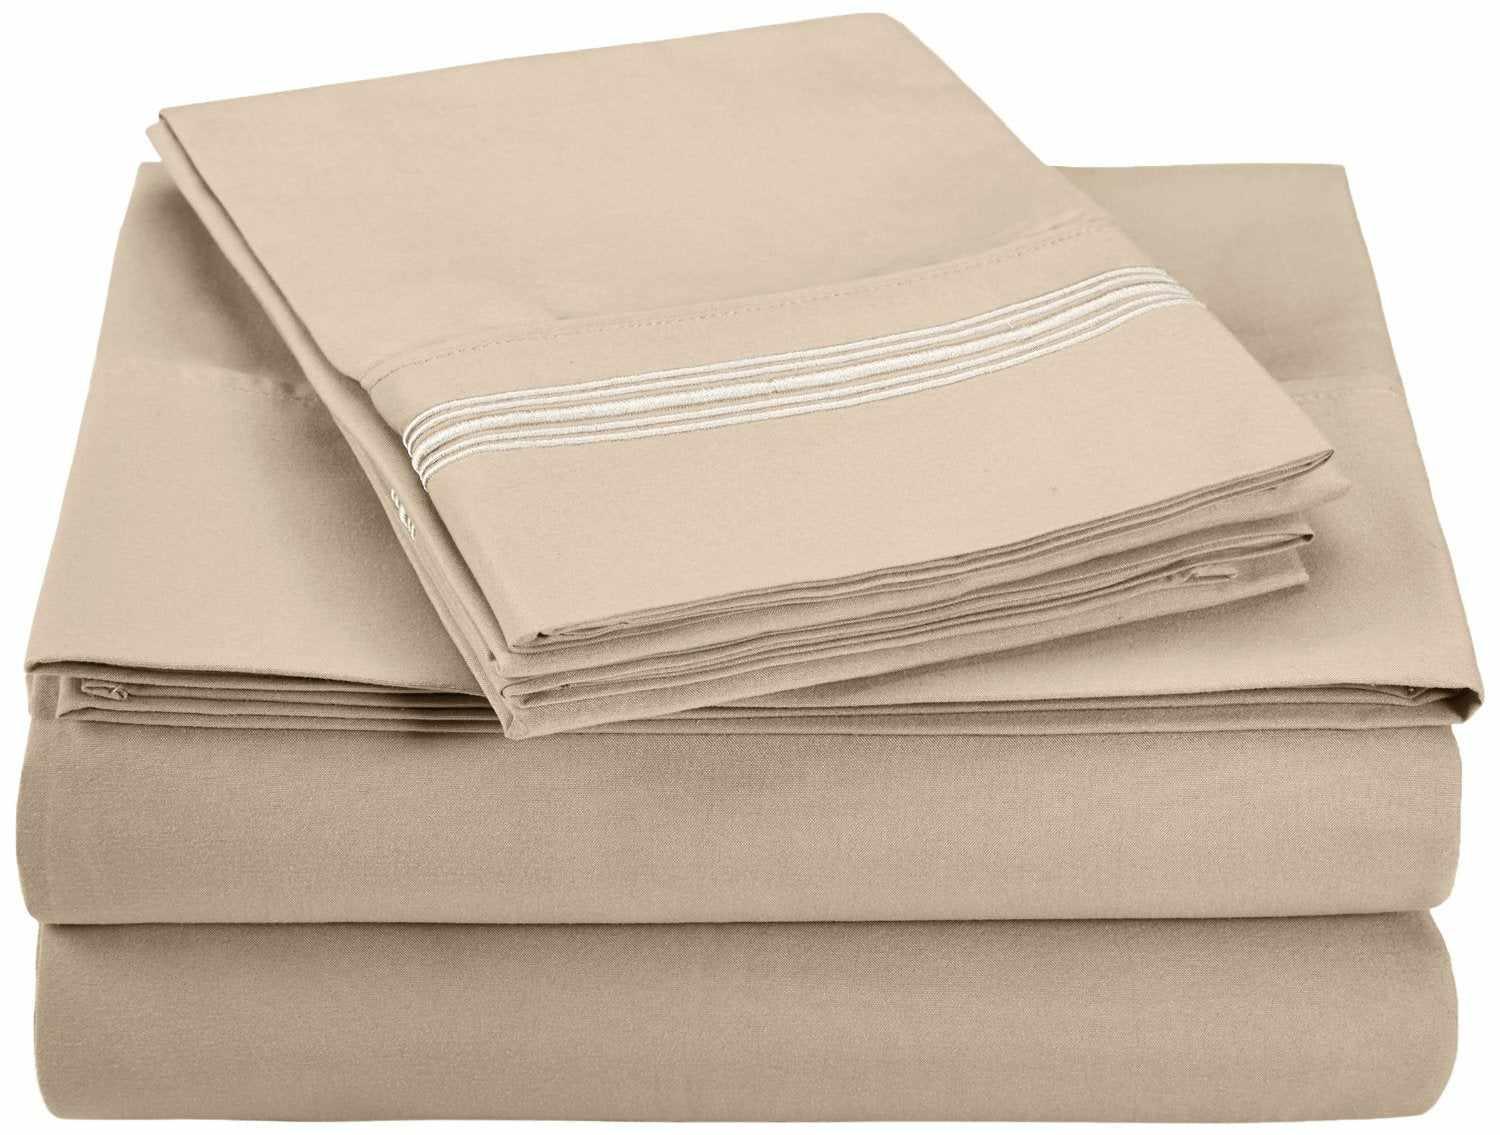 Superior 5 Embroidered Lines Wrinkle Resistant Microfiber Deep Pocket Sheet Set - Tan